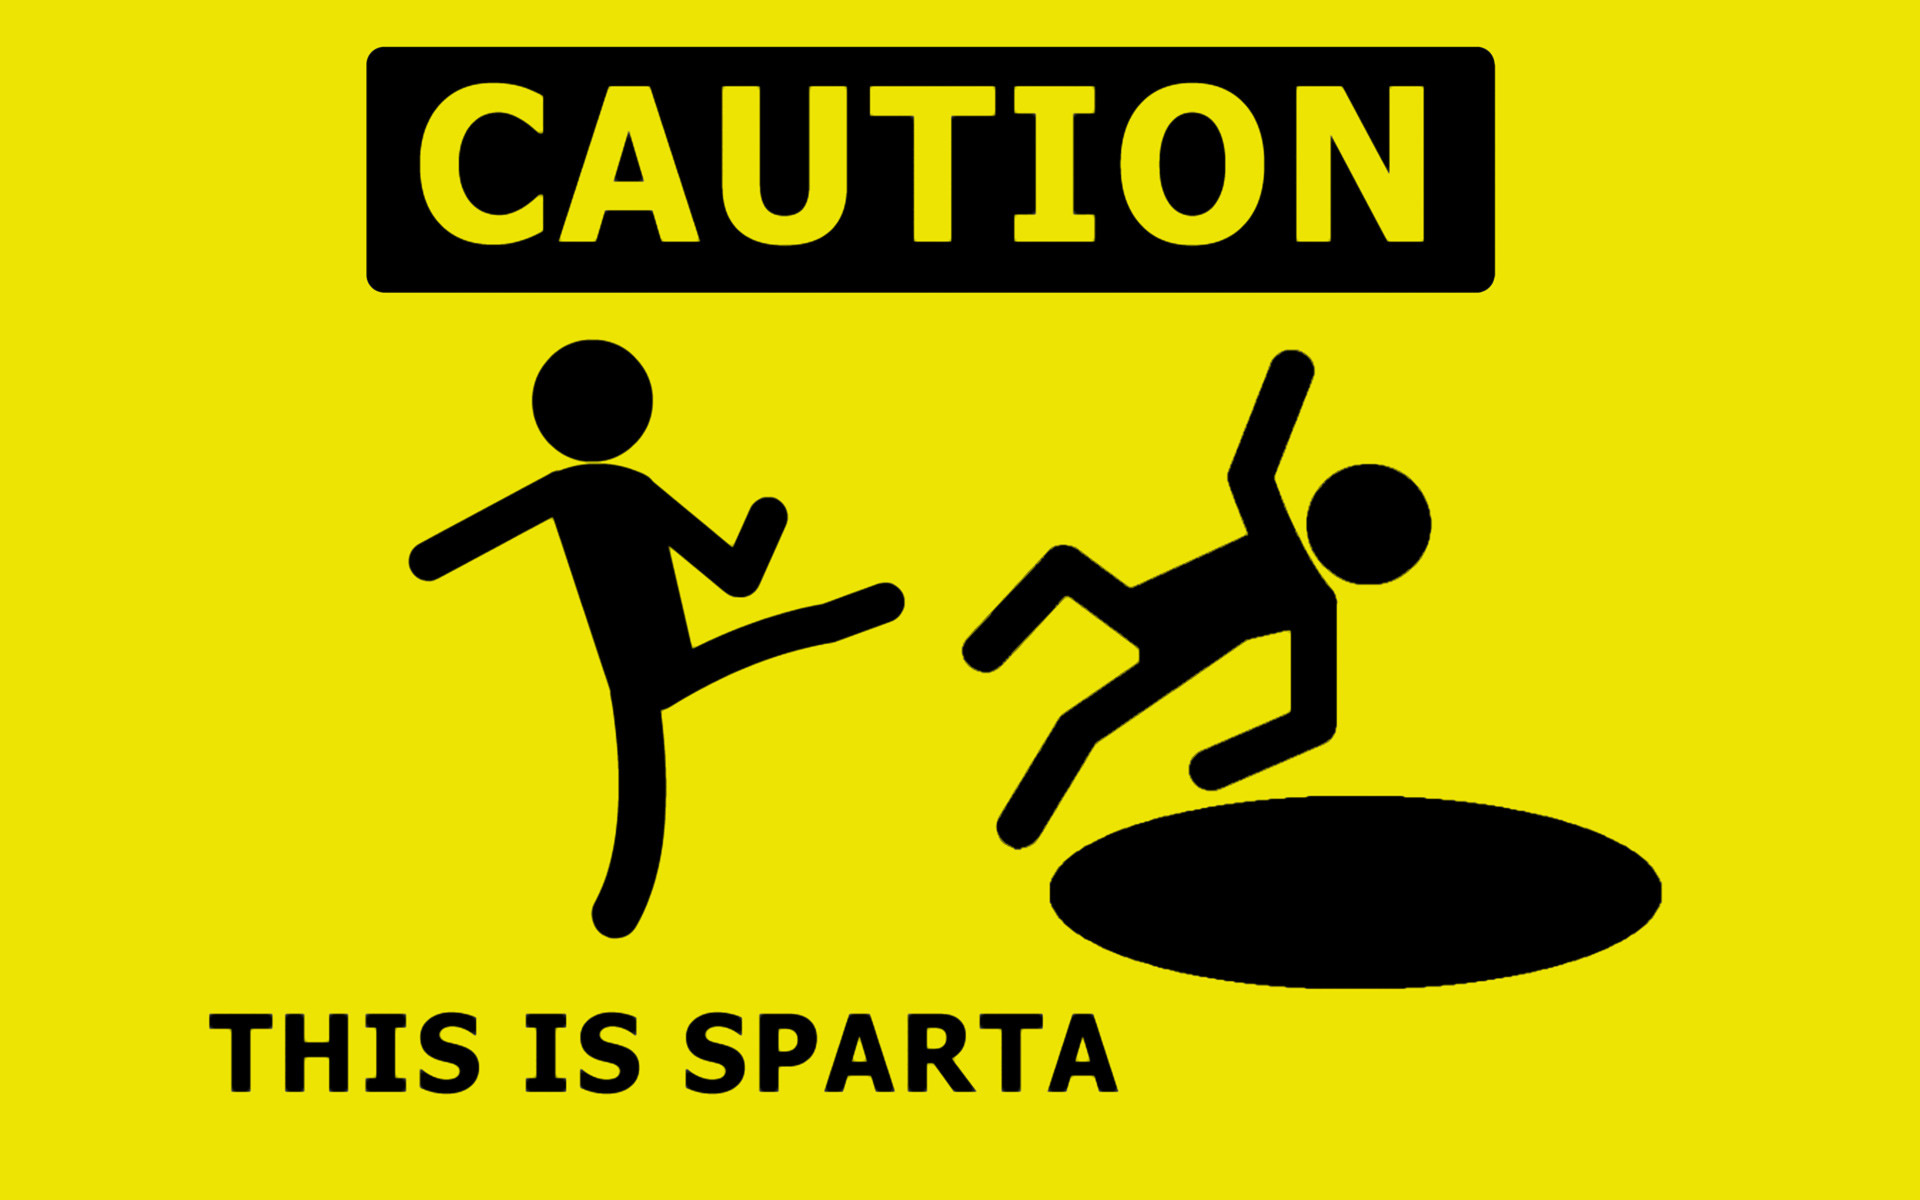 Тхис ис. This is Sparta. ВИС ИС Спарта. Это Спарта Мем. Из из Спарта.